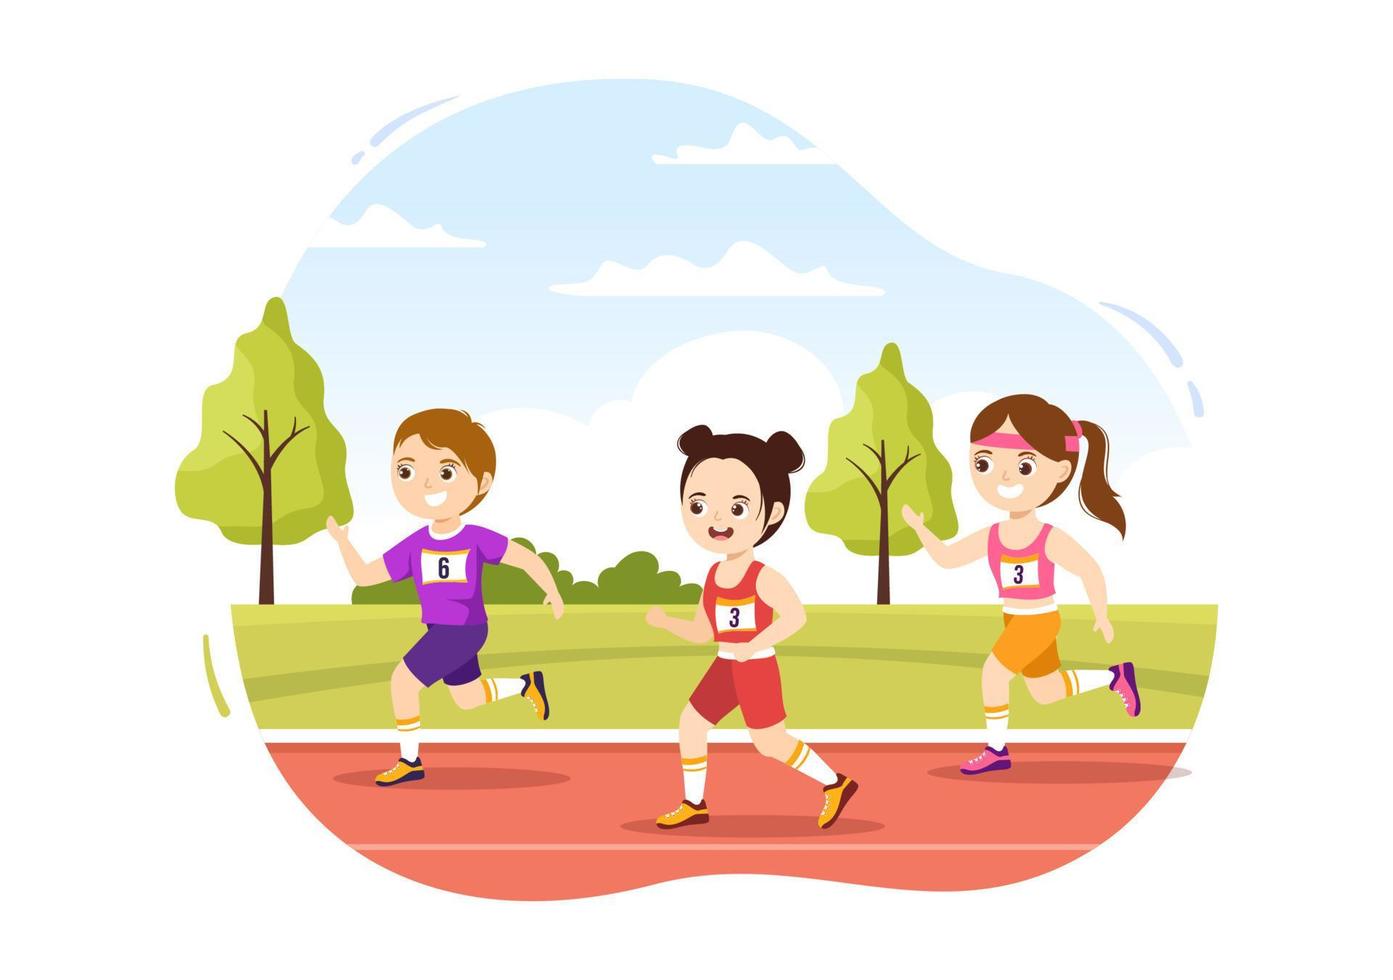 marathonlaufillustration mit kindern, die laufen, sportturnier joggen und laufen, um die ziellinie in einer flachen handgezeichneten karikaturvorlage zu erreichen vektor